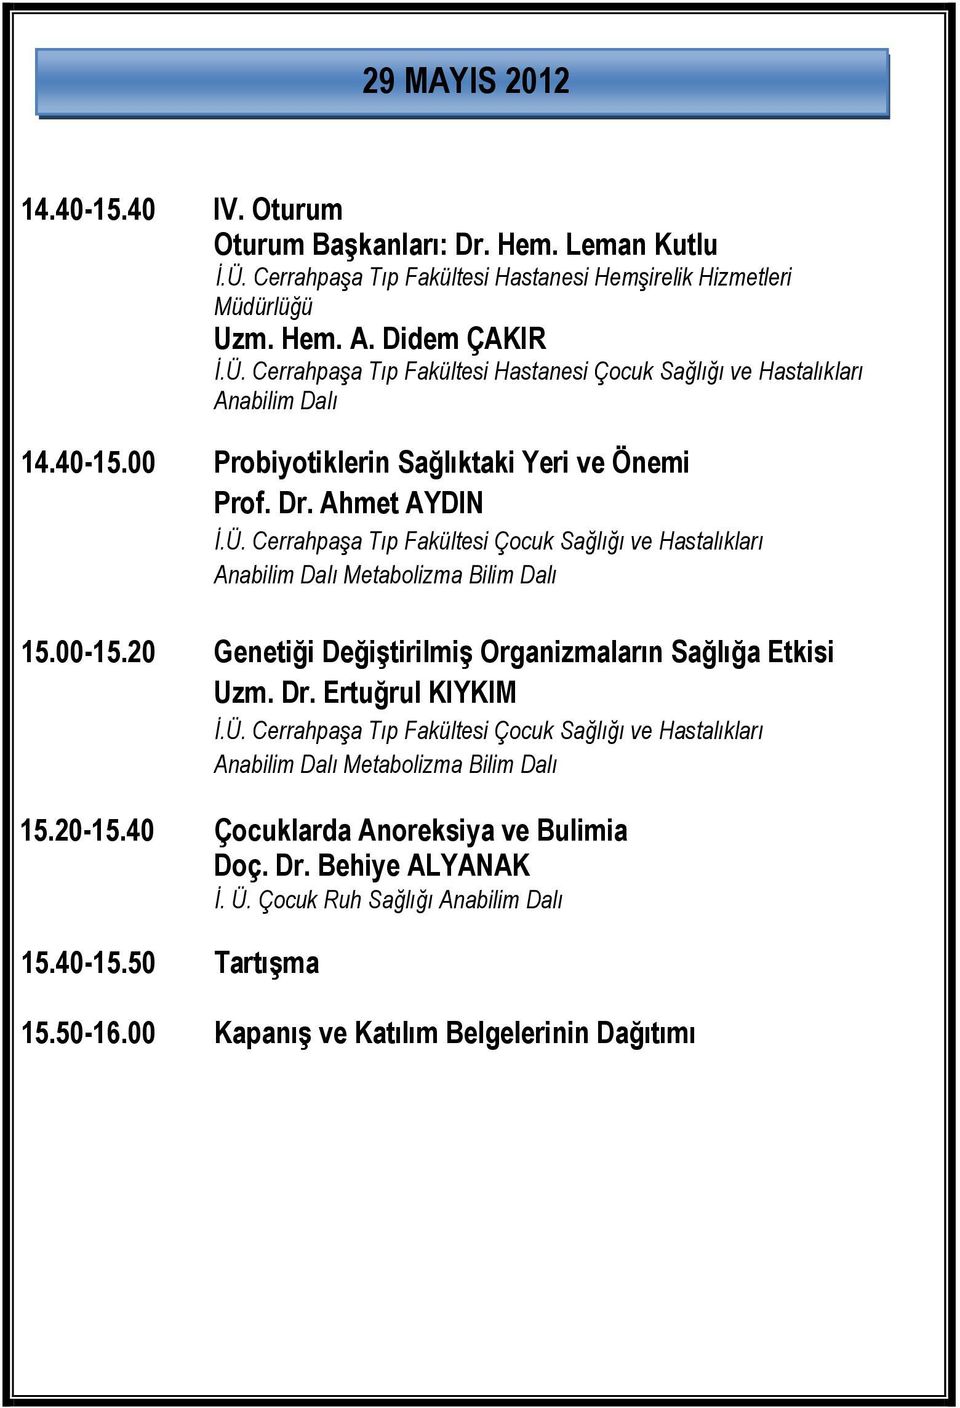 00 Probiyotiklerin Sağlıktaki Yeri ve Önemi Prof. Dr. Ahmet AYDIN 15.00-15.